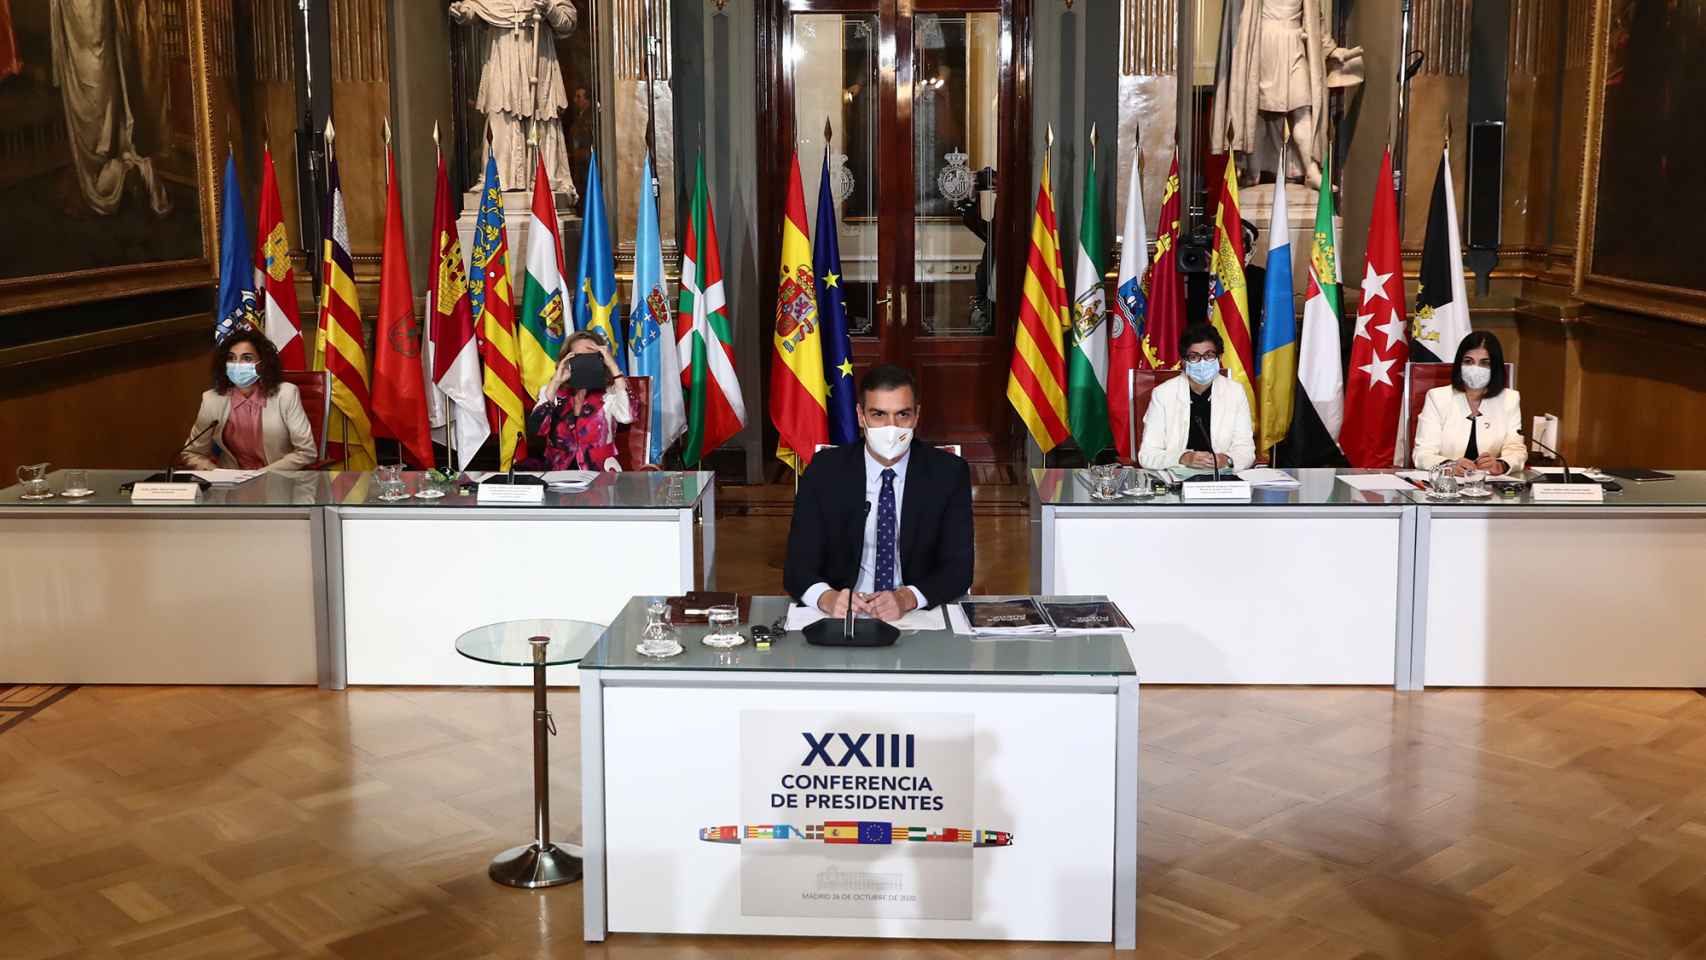 Pedro Sánchez preside la XXIII Conferencia de Presidentes, en el Senado, el pasado octubre de 2020.